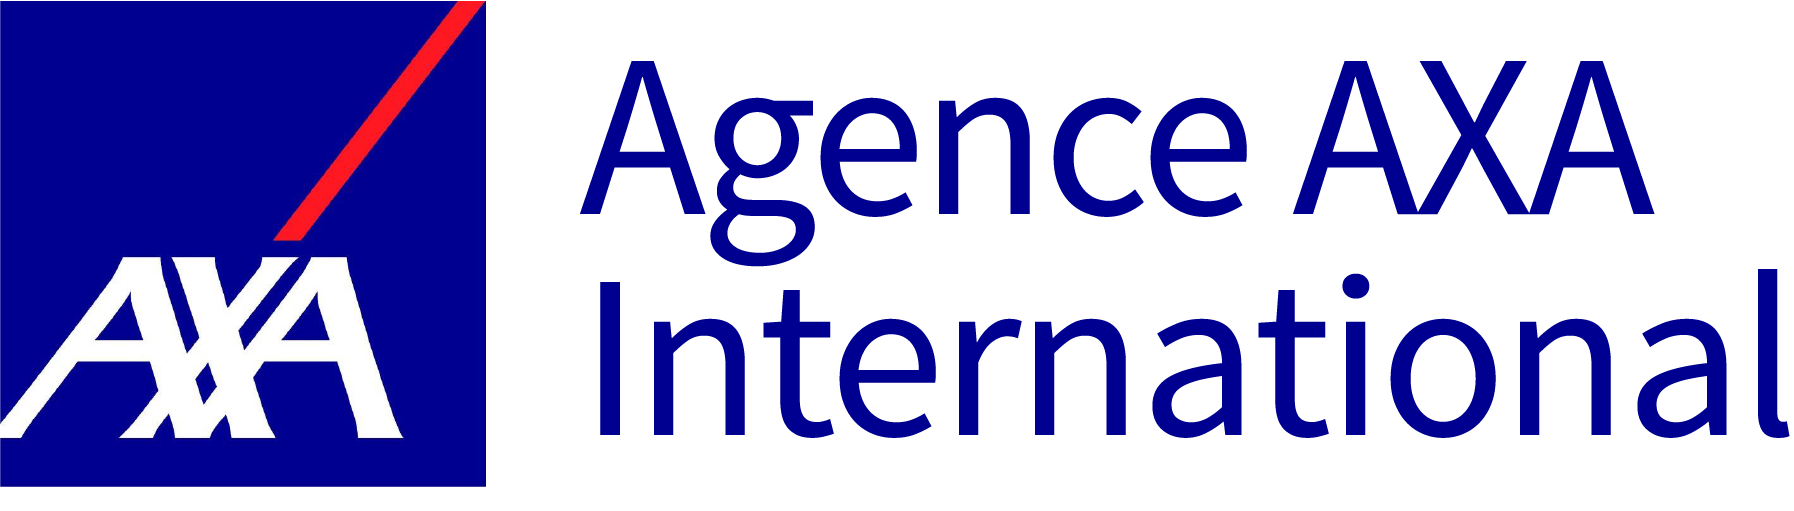 Agence AXA International - bleu